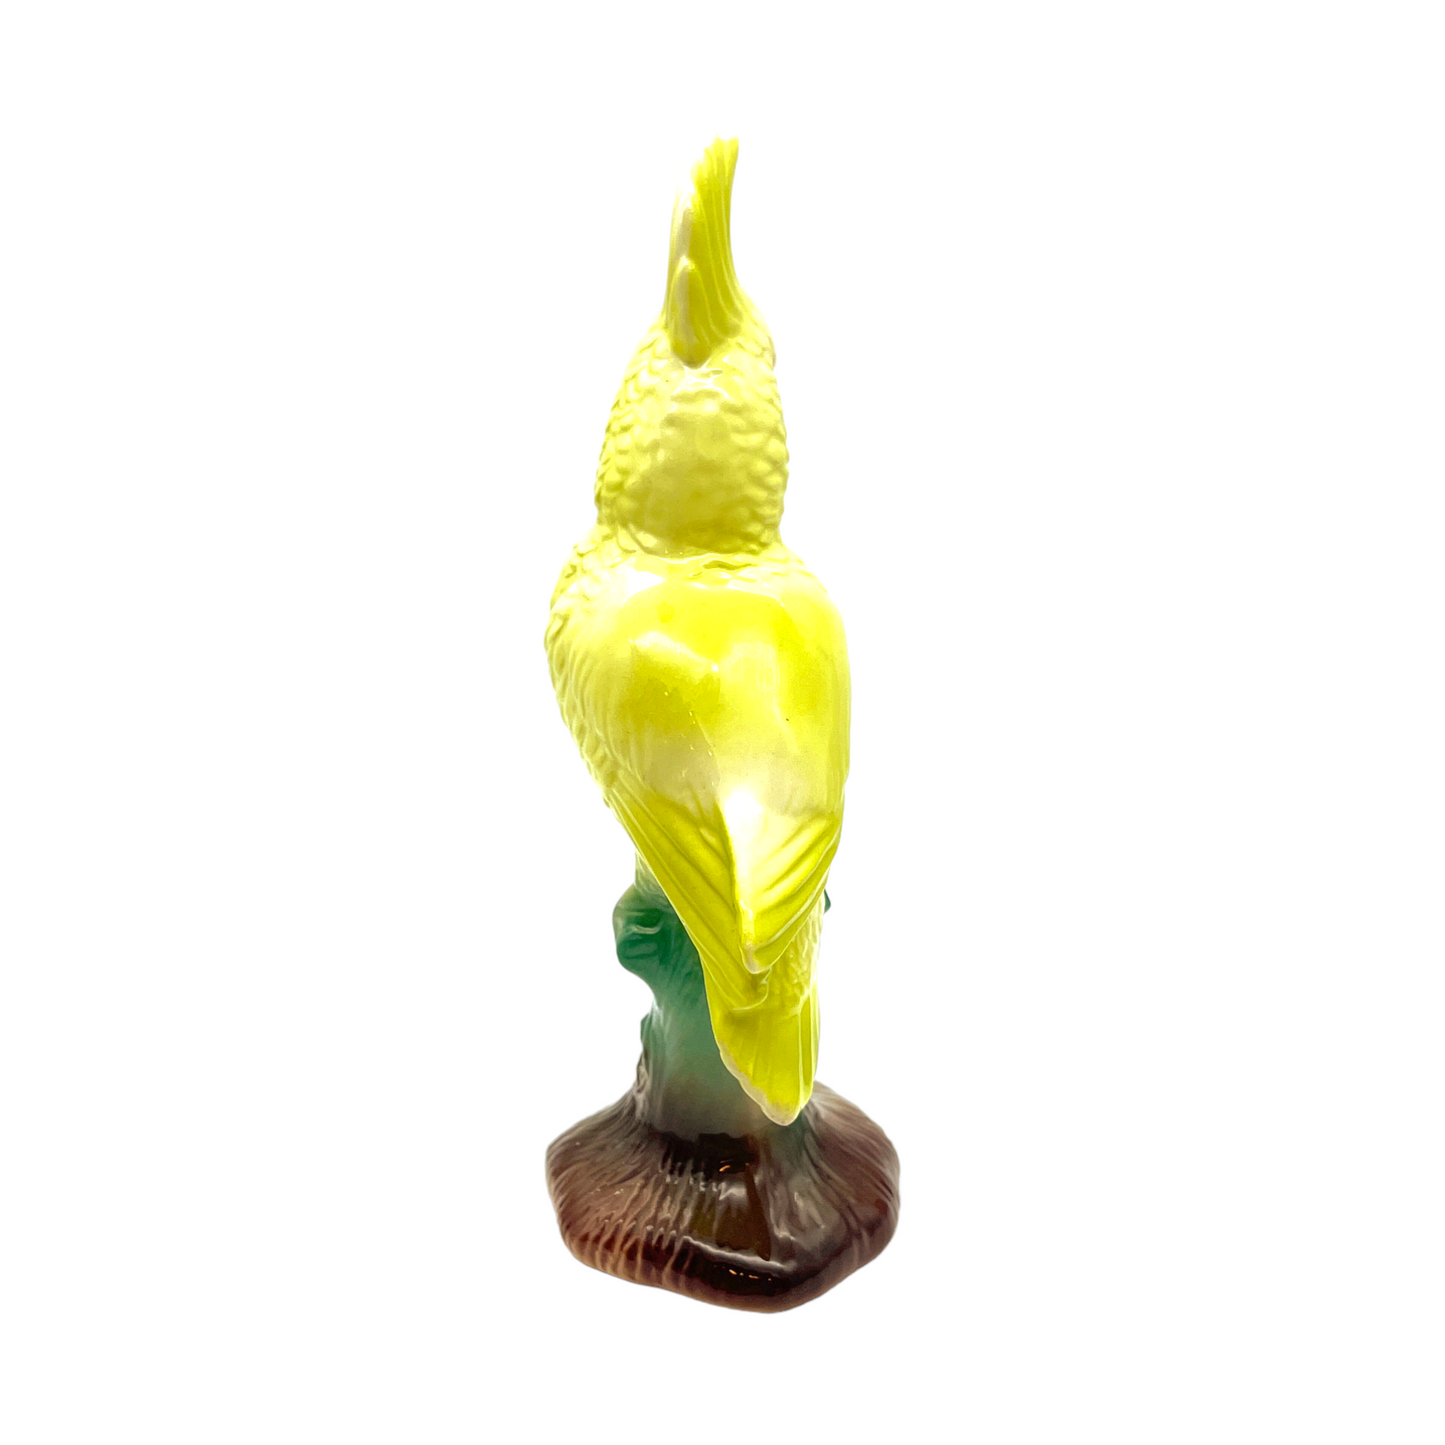 William Maddux - Lime Green Cockatoo Figurine - Vintage - 7"